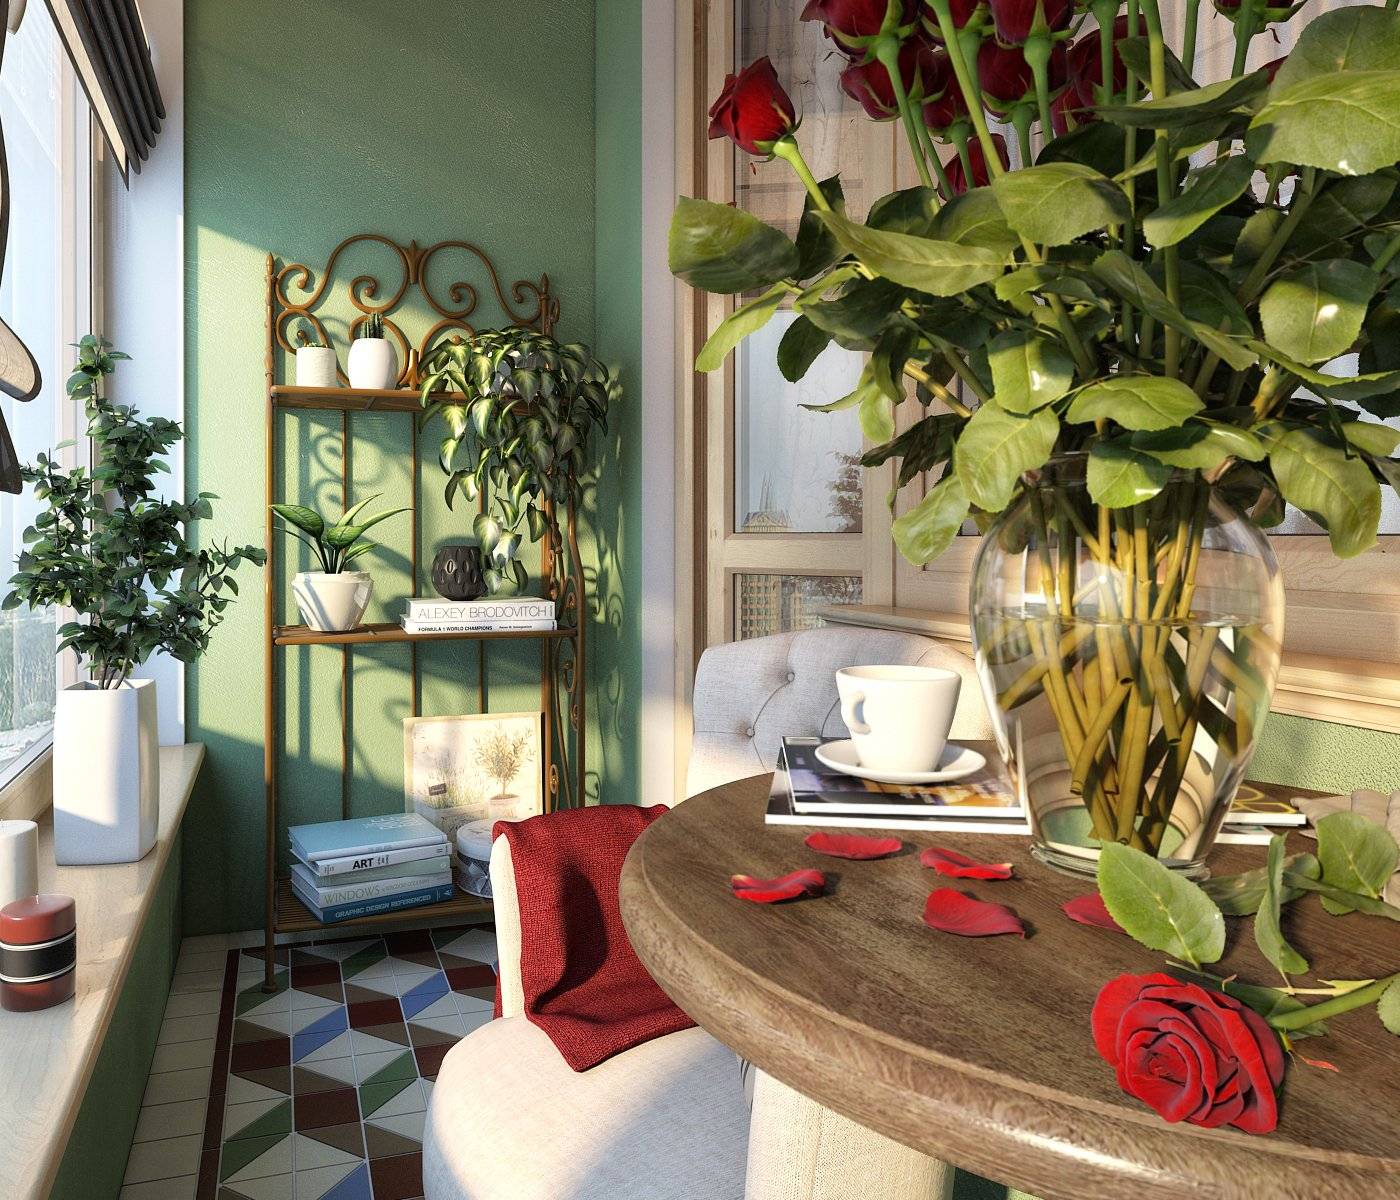 Как расставить цветы в квартире: цветы в интерьере, фитокартины, зеленые стены и флорариумы